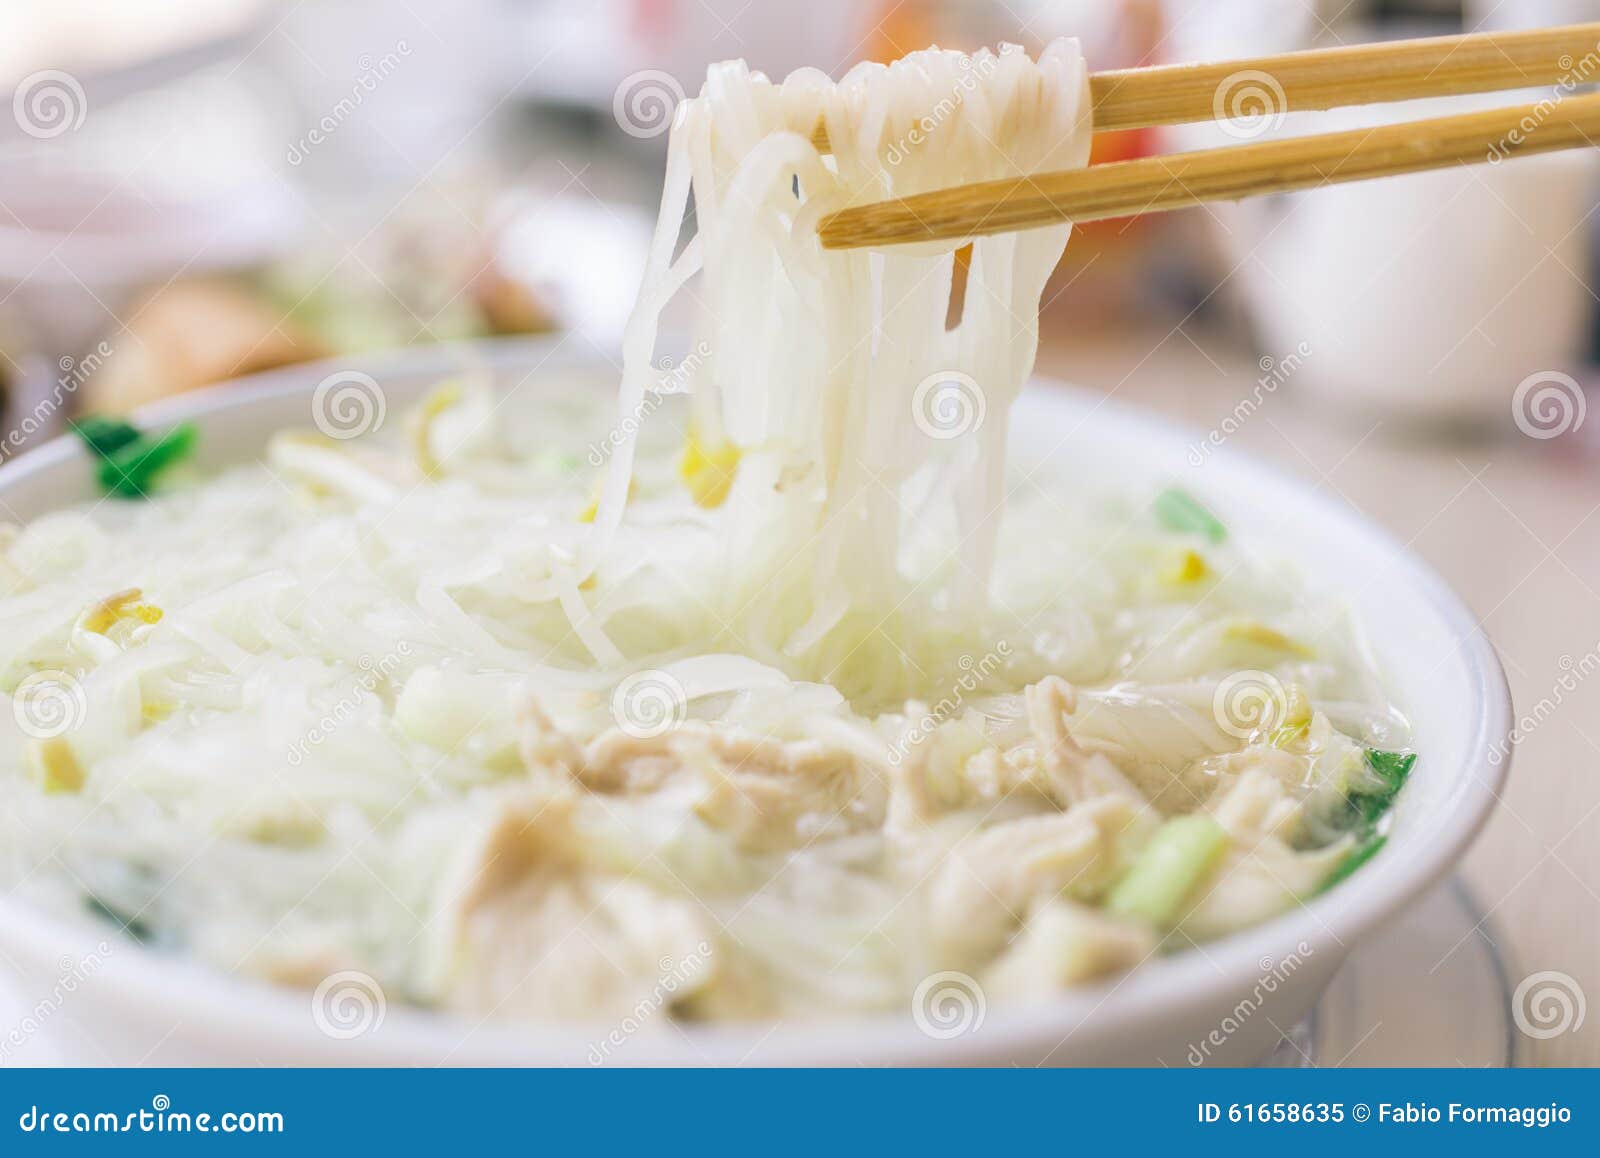 traditional thai noodle soup